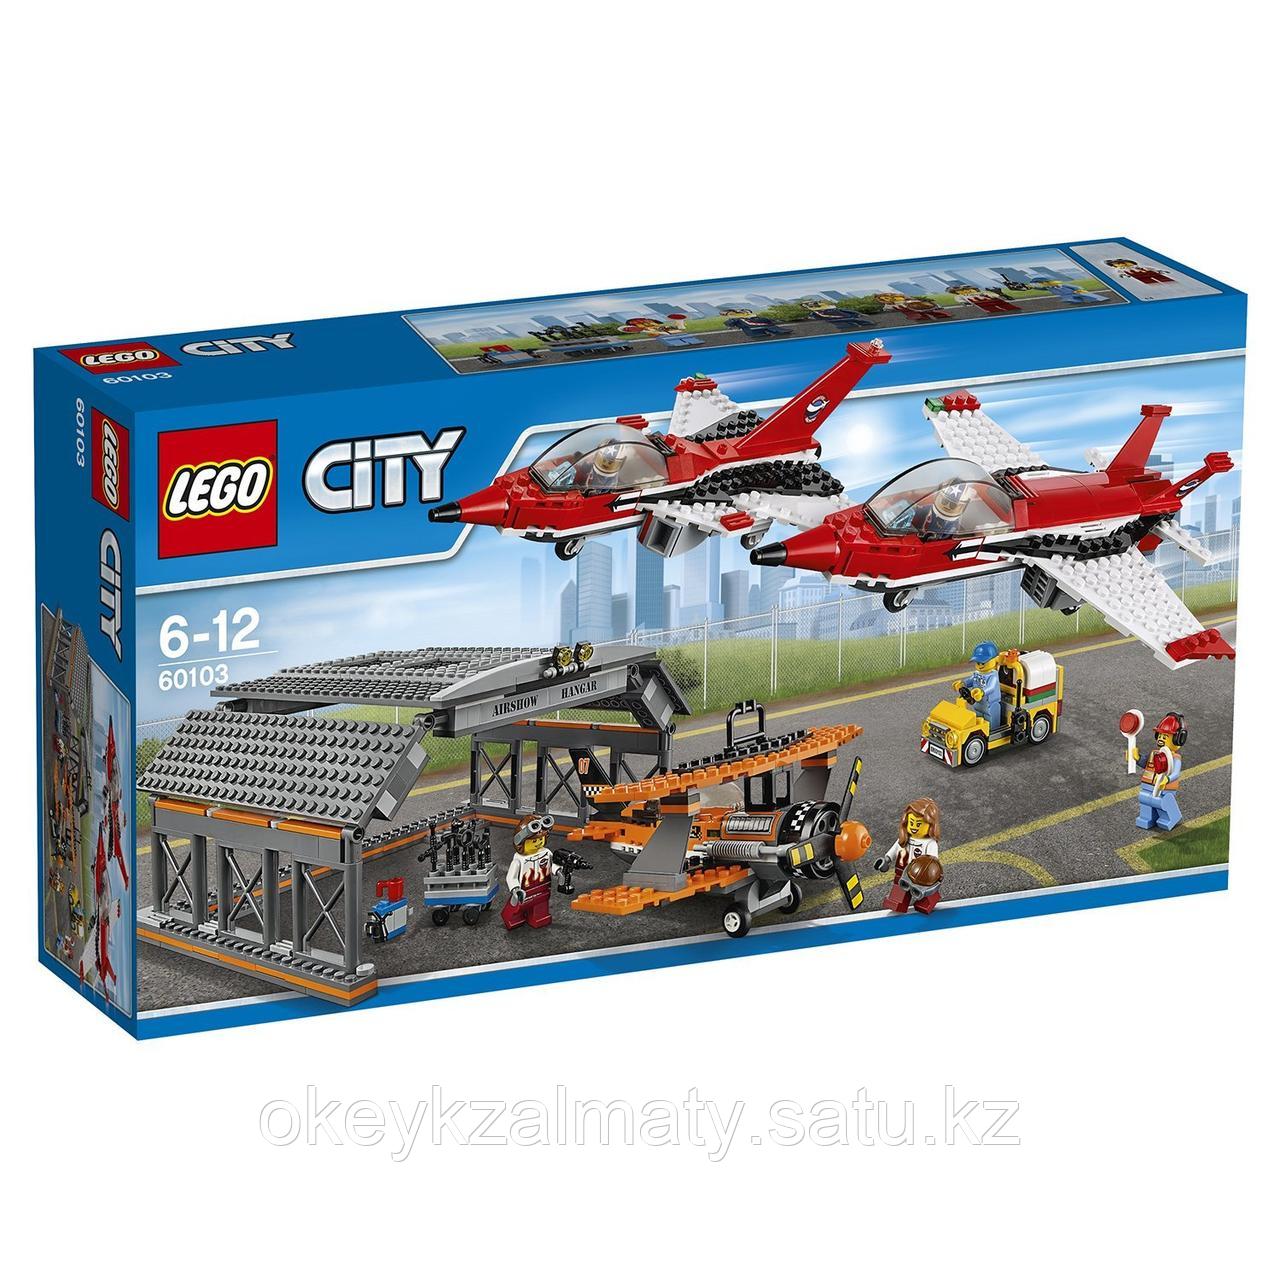 LEGO City: Авиашоу 60103